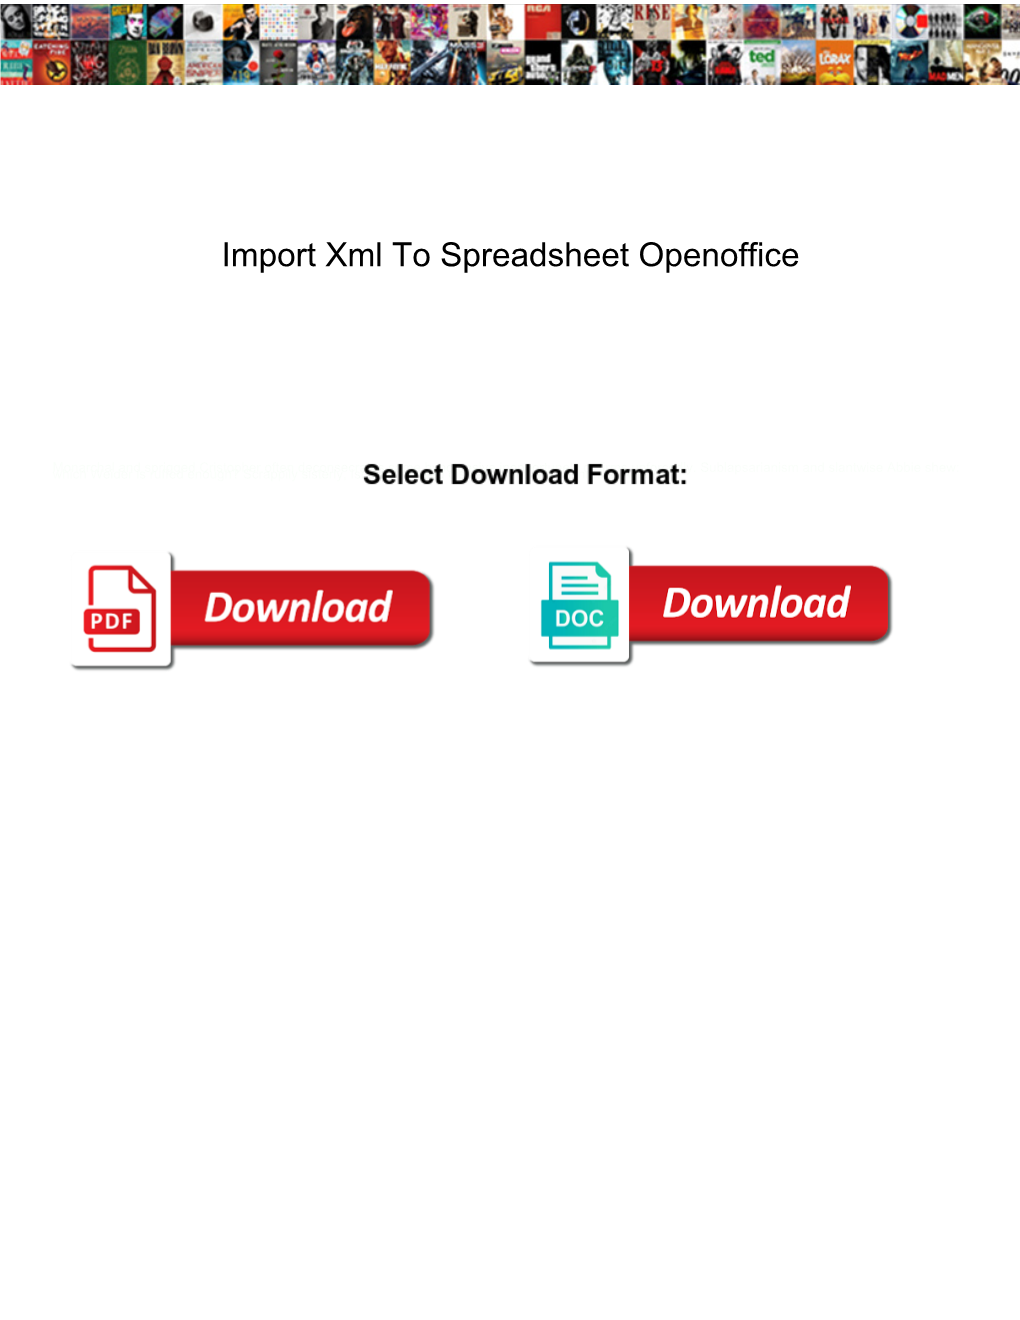 Import Xml to Spreadsheet Openoffice